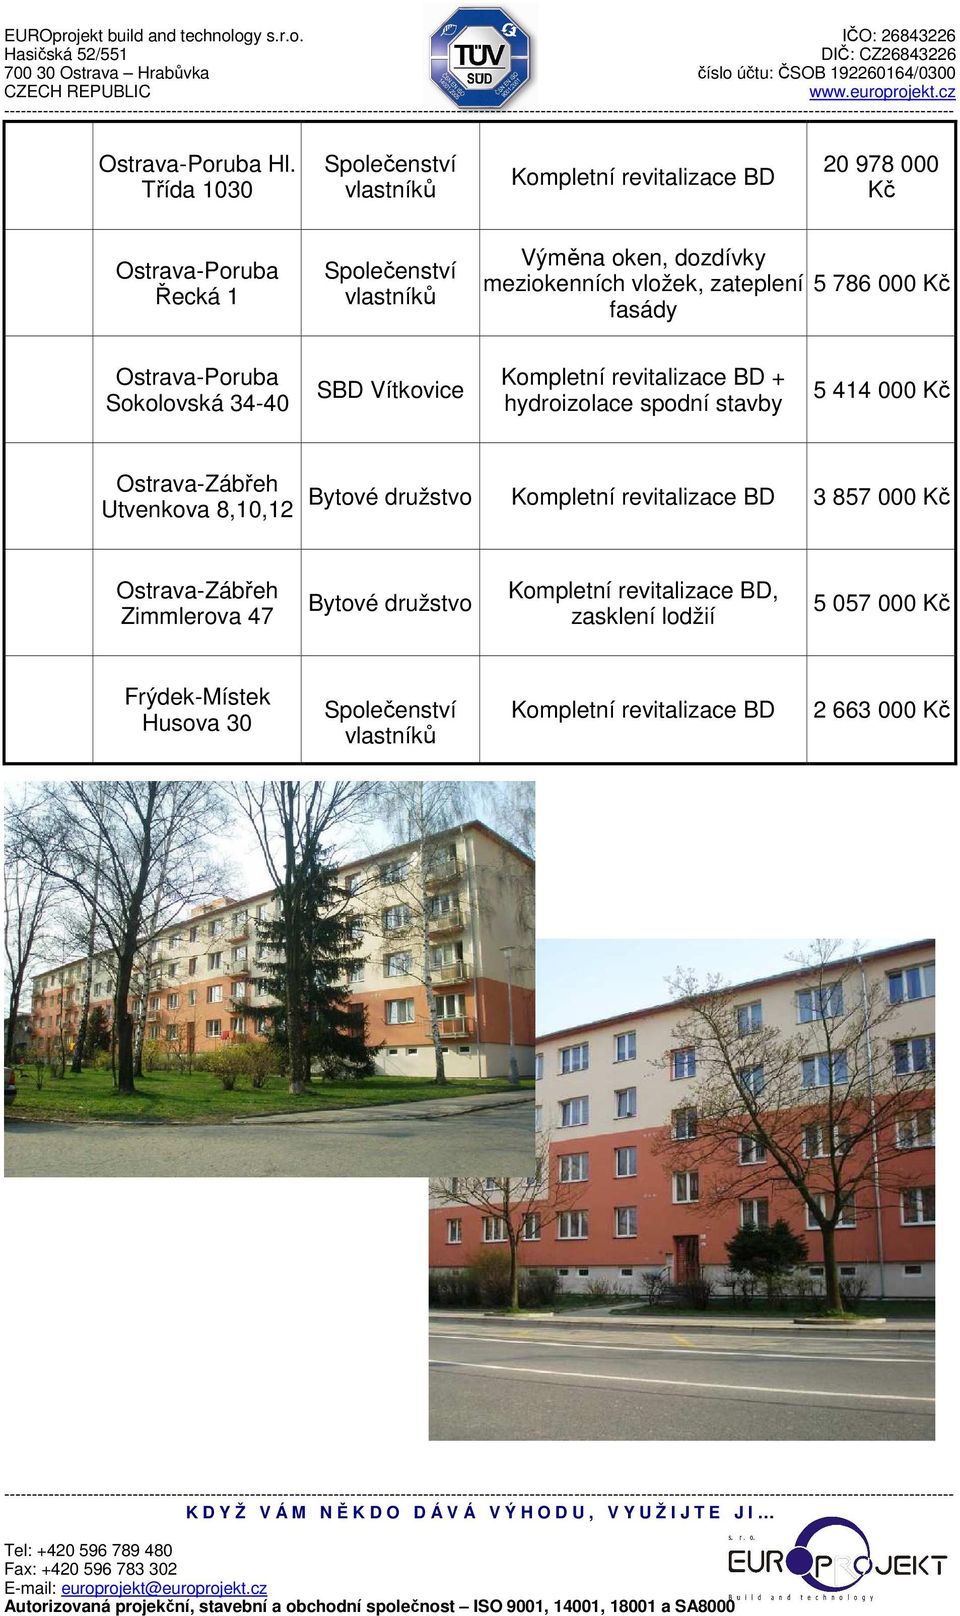 meziokenních vložek, zateplení 5 786 000 Kč fasády - Sokolovská 34-40 + hydroizolace spodní stavby 5 414 000 Kč